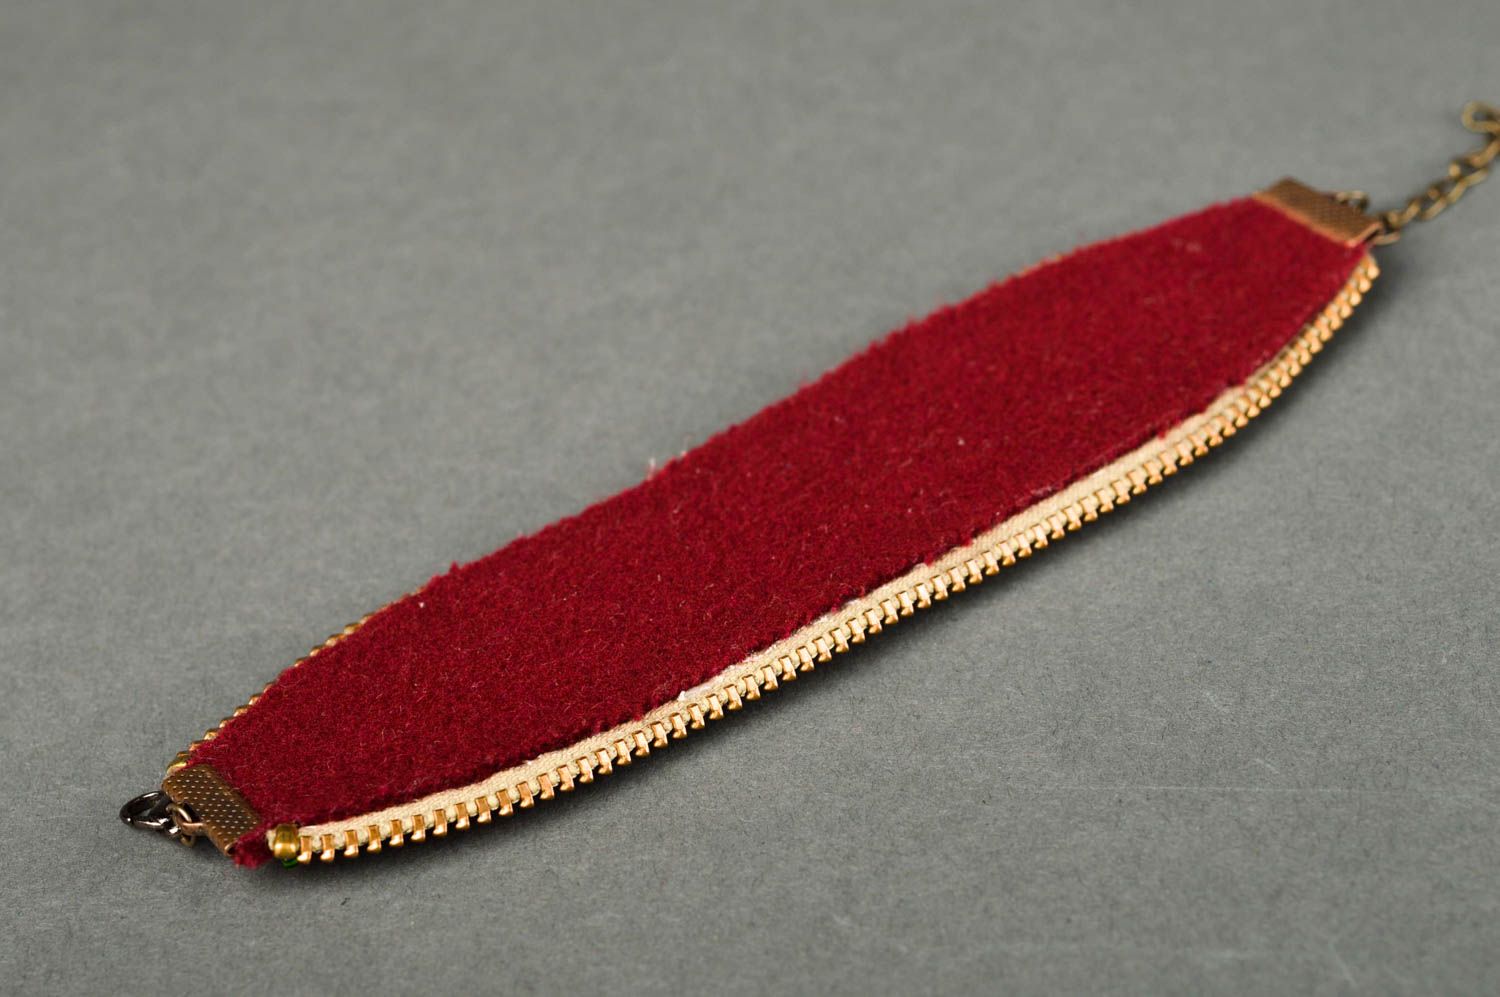 Браслет ручной работы текстильный браслет из флиса оригинальный браслет красный фото 3